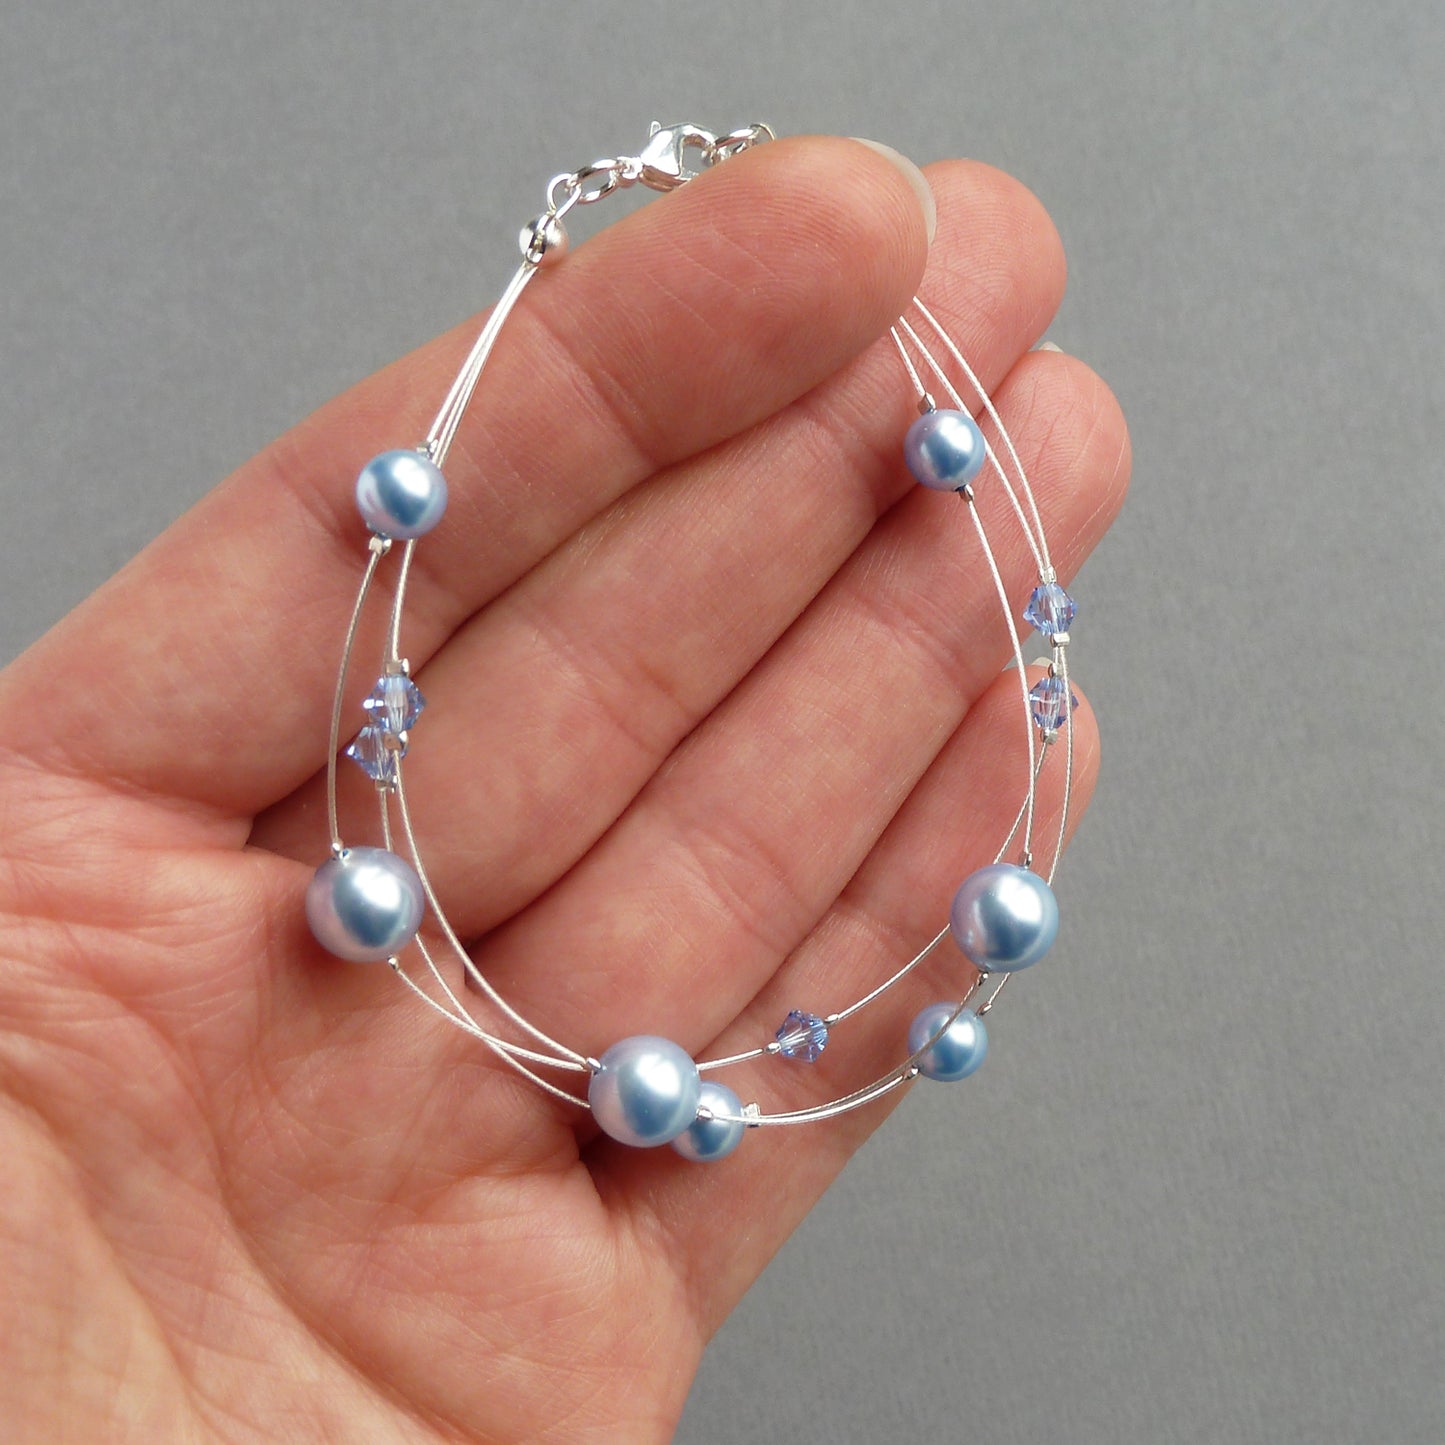 Pale blue pearl bridesmaids bracelets